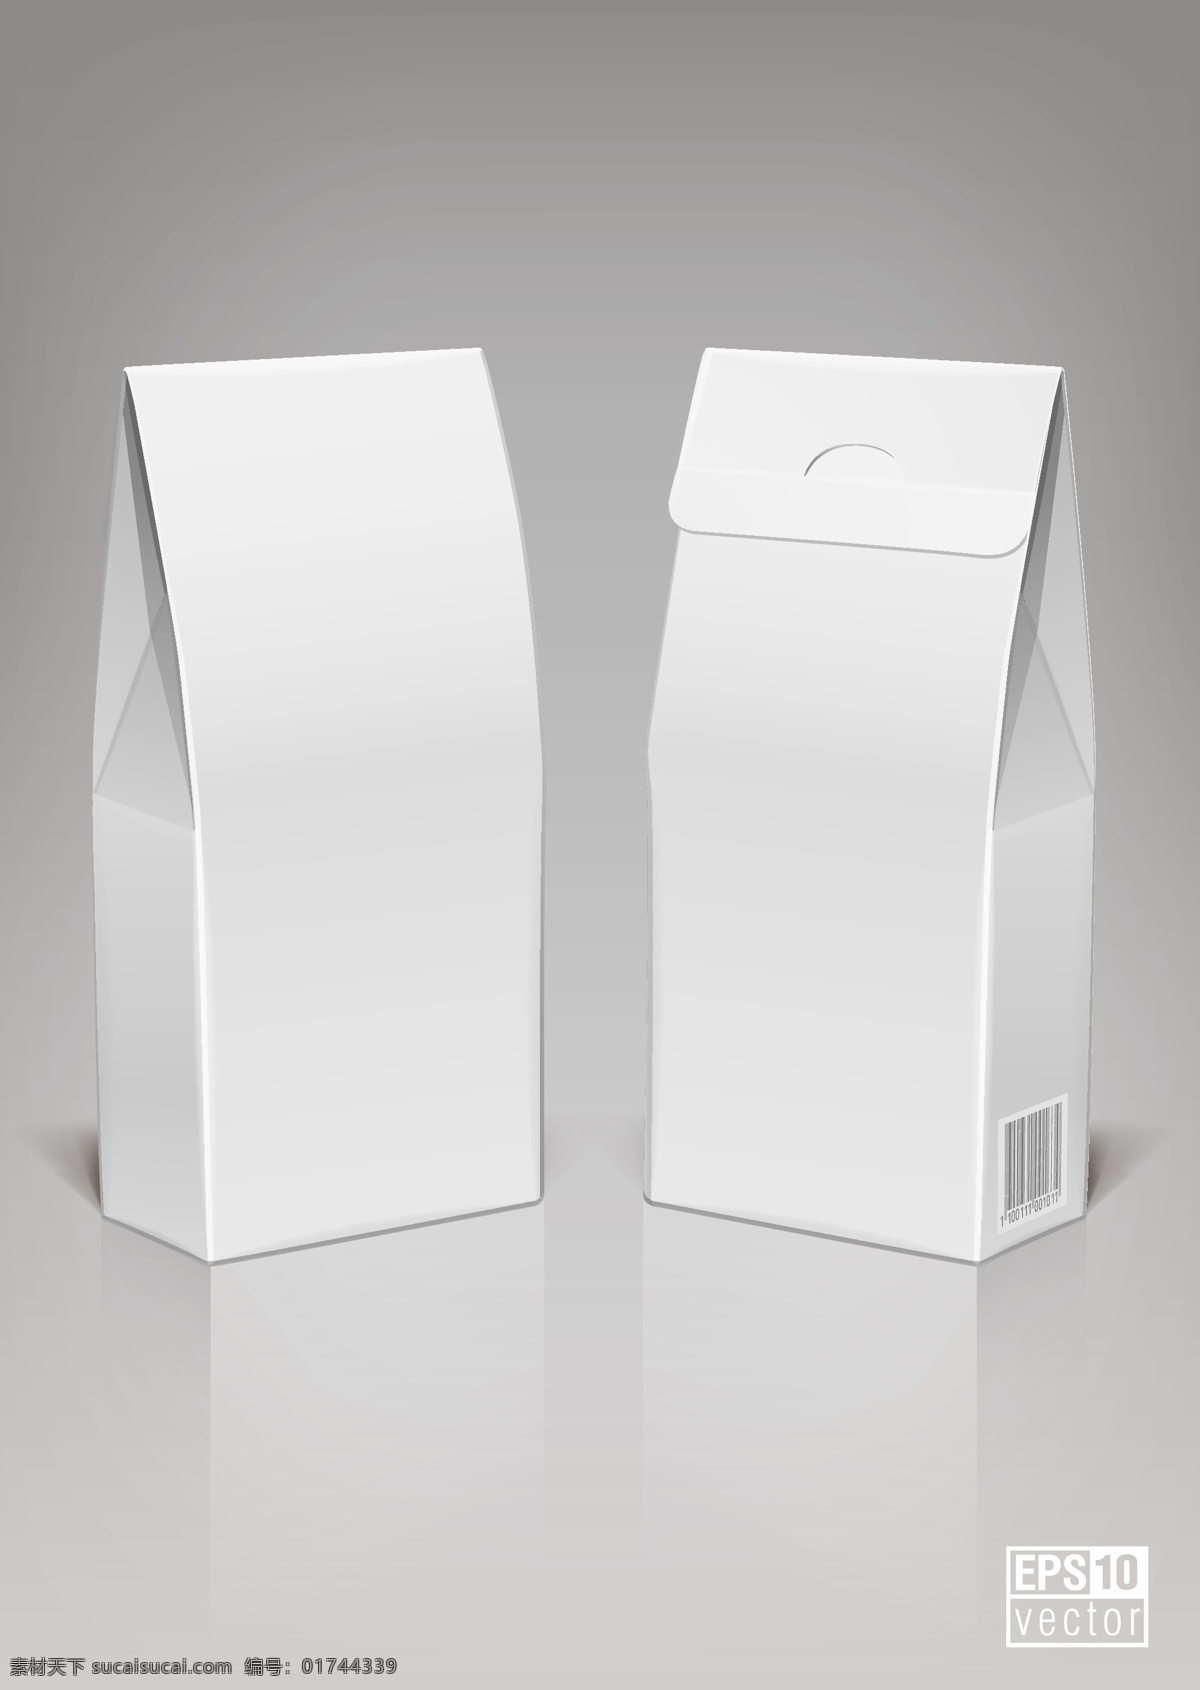 包装盒 模板 矢量 cd cd盒 标贴 盒子 牛奶盒 矢量素材 鞋盒 圆盒 矢量图